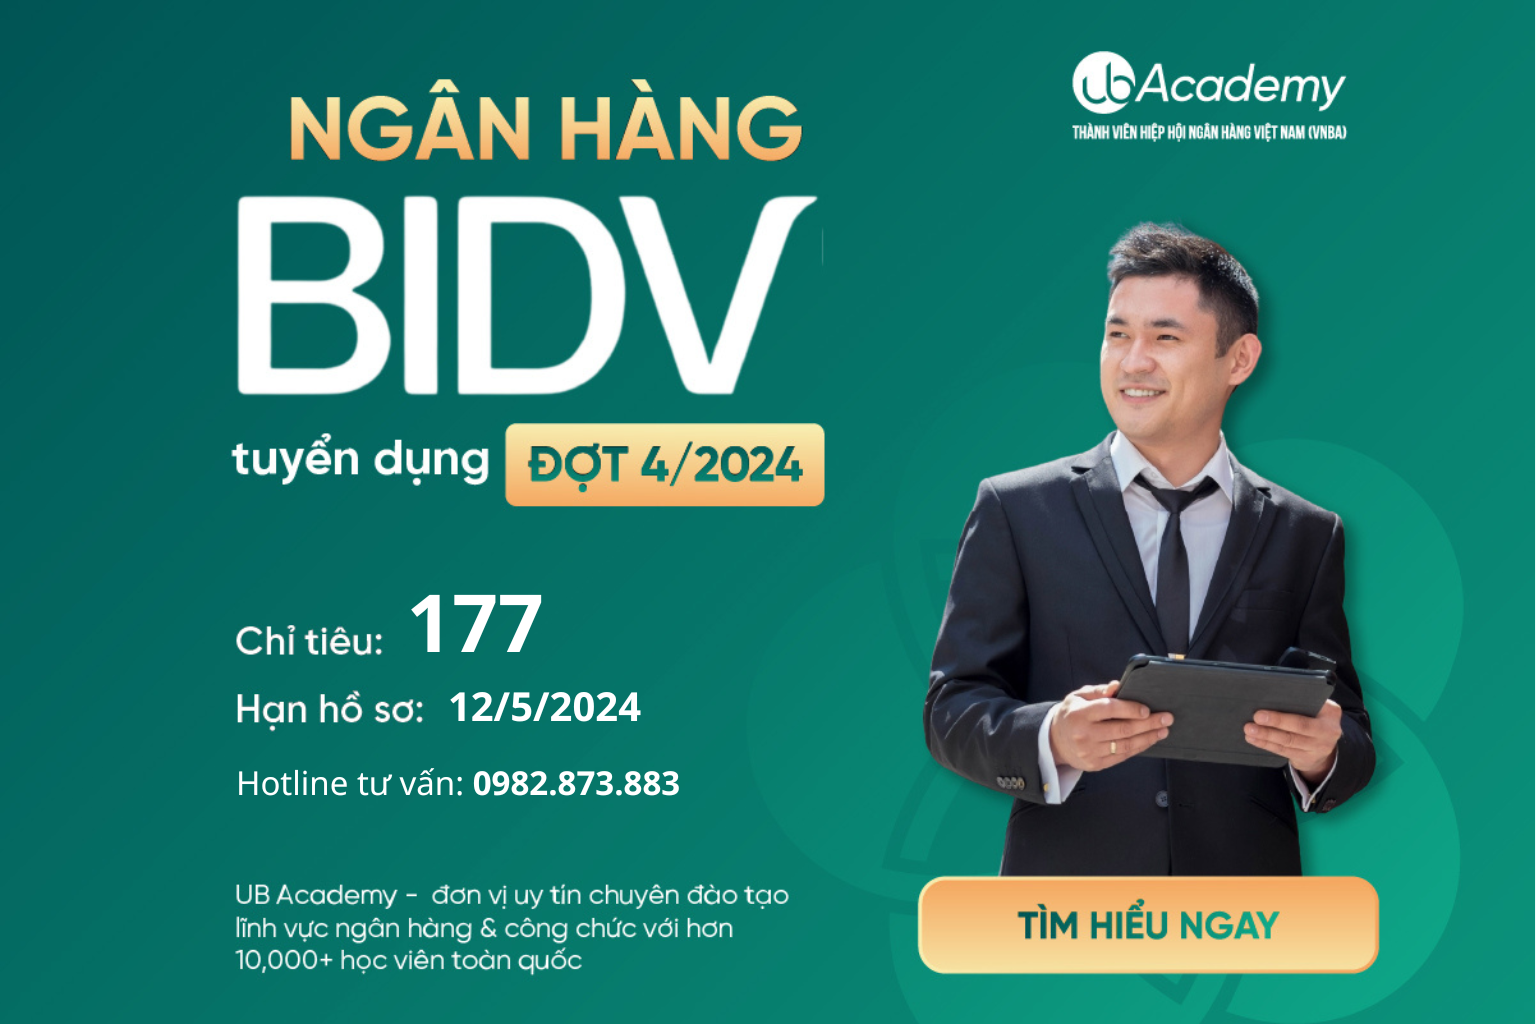 Ngân hàng BIDV tuyển dụng Đợt 4/2024